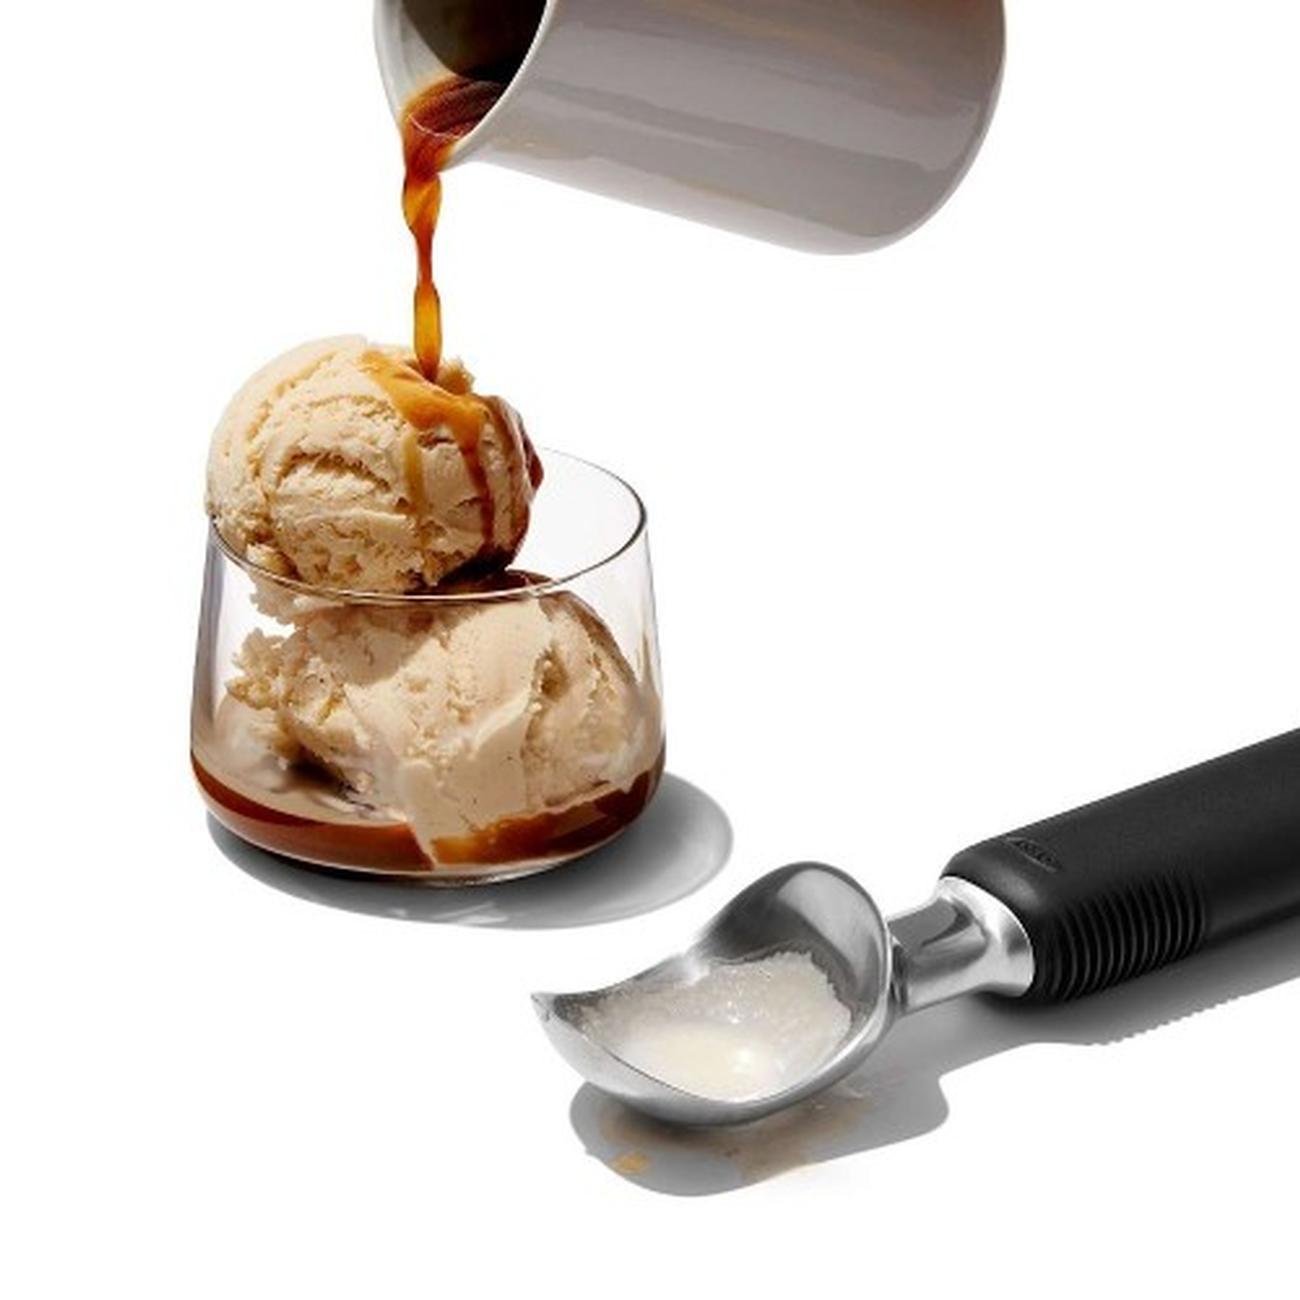 OXO Classic Swipe Ice Cream Scoop